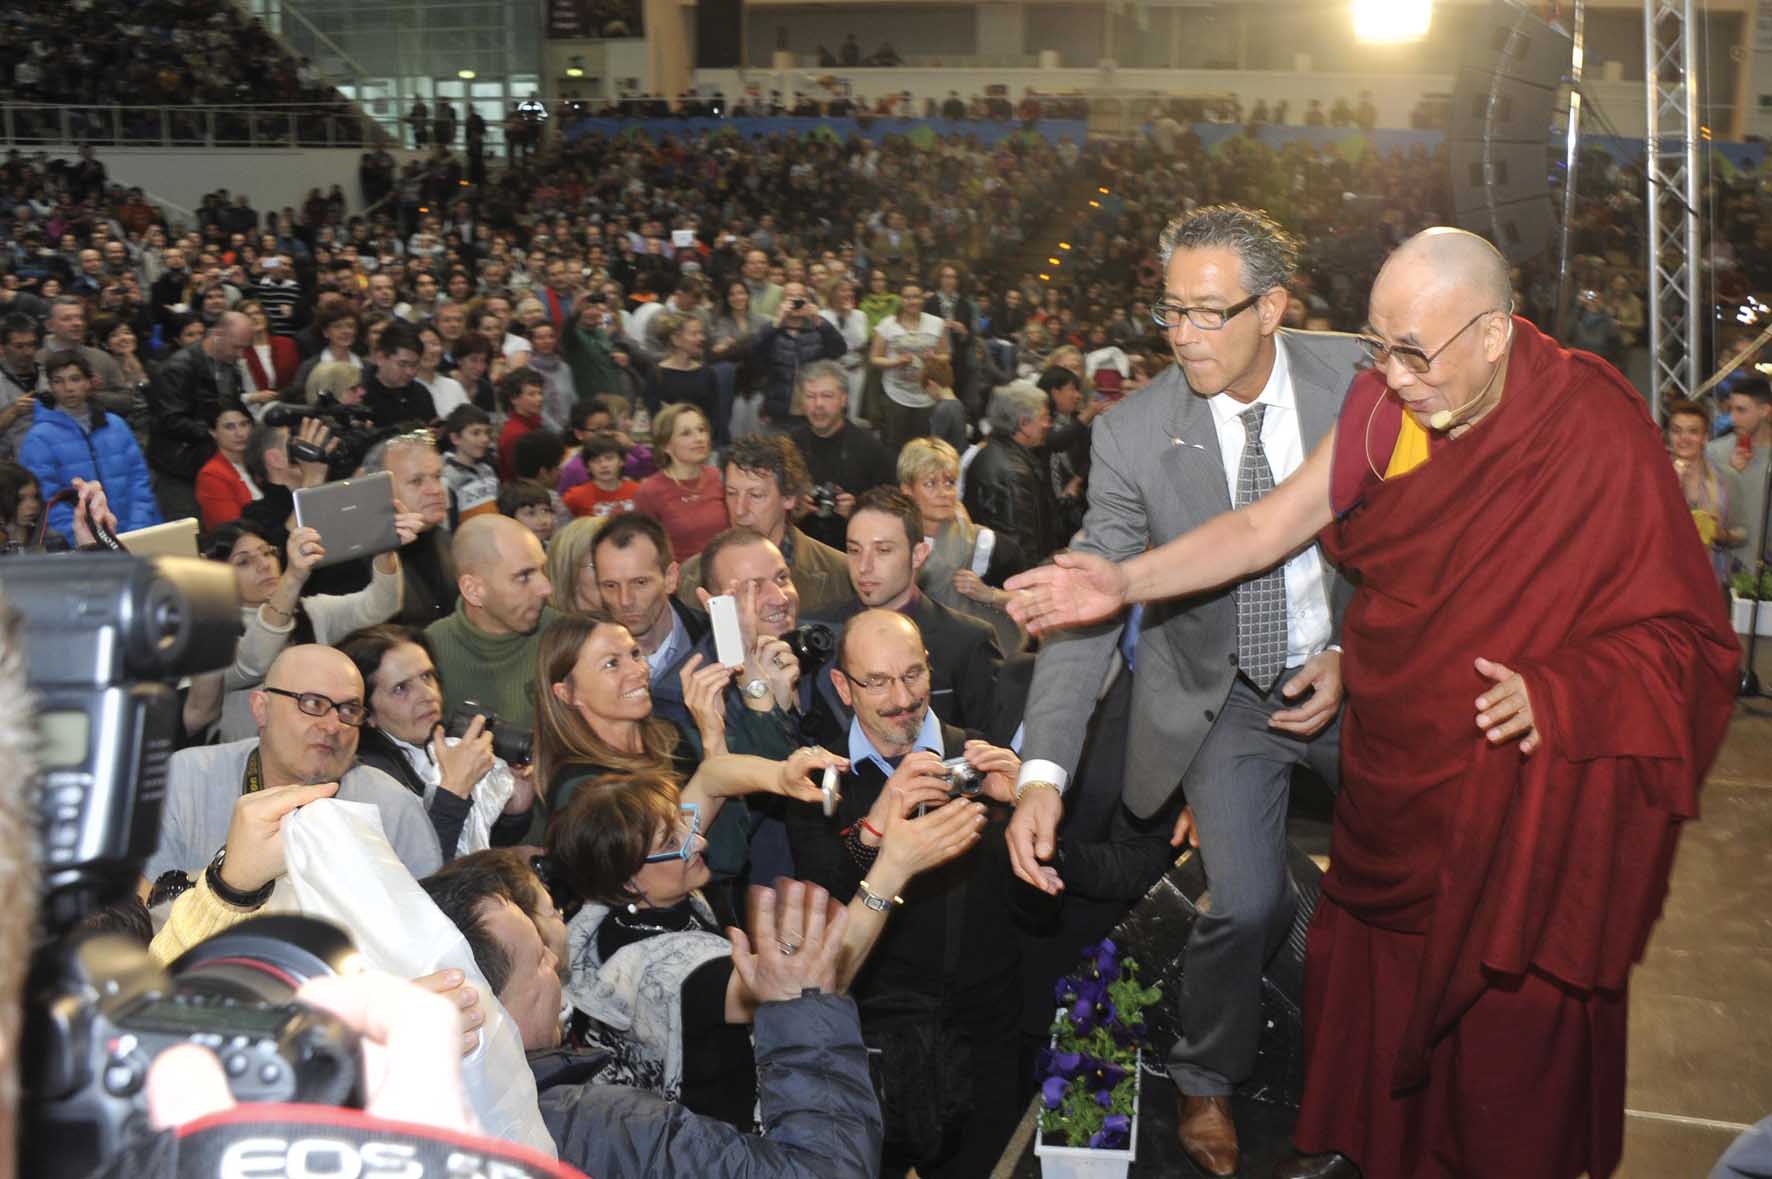 Dalai Lama Tenzin Gyatso palatrento folla 1